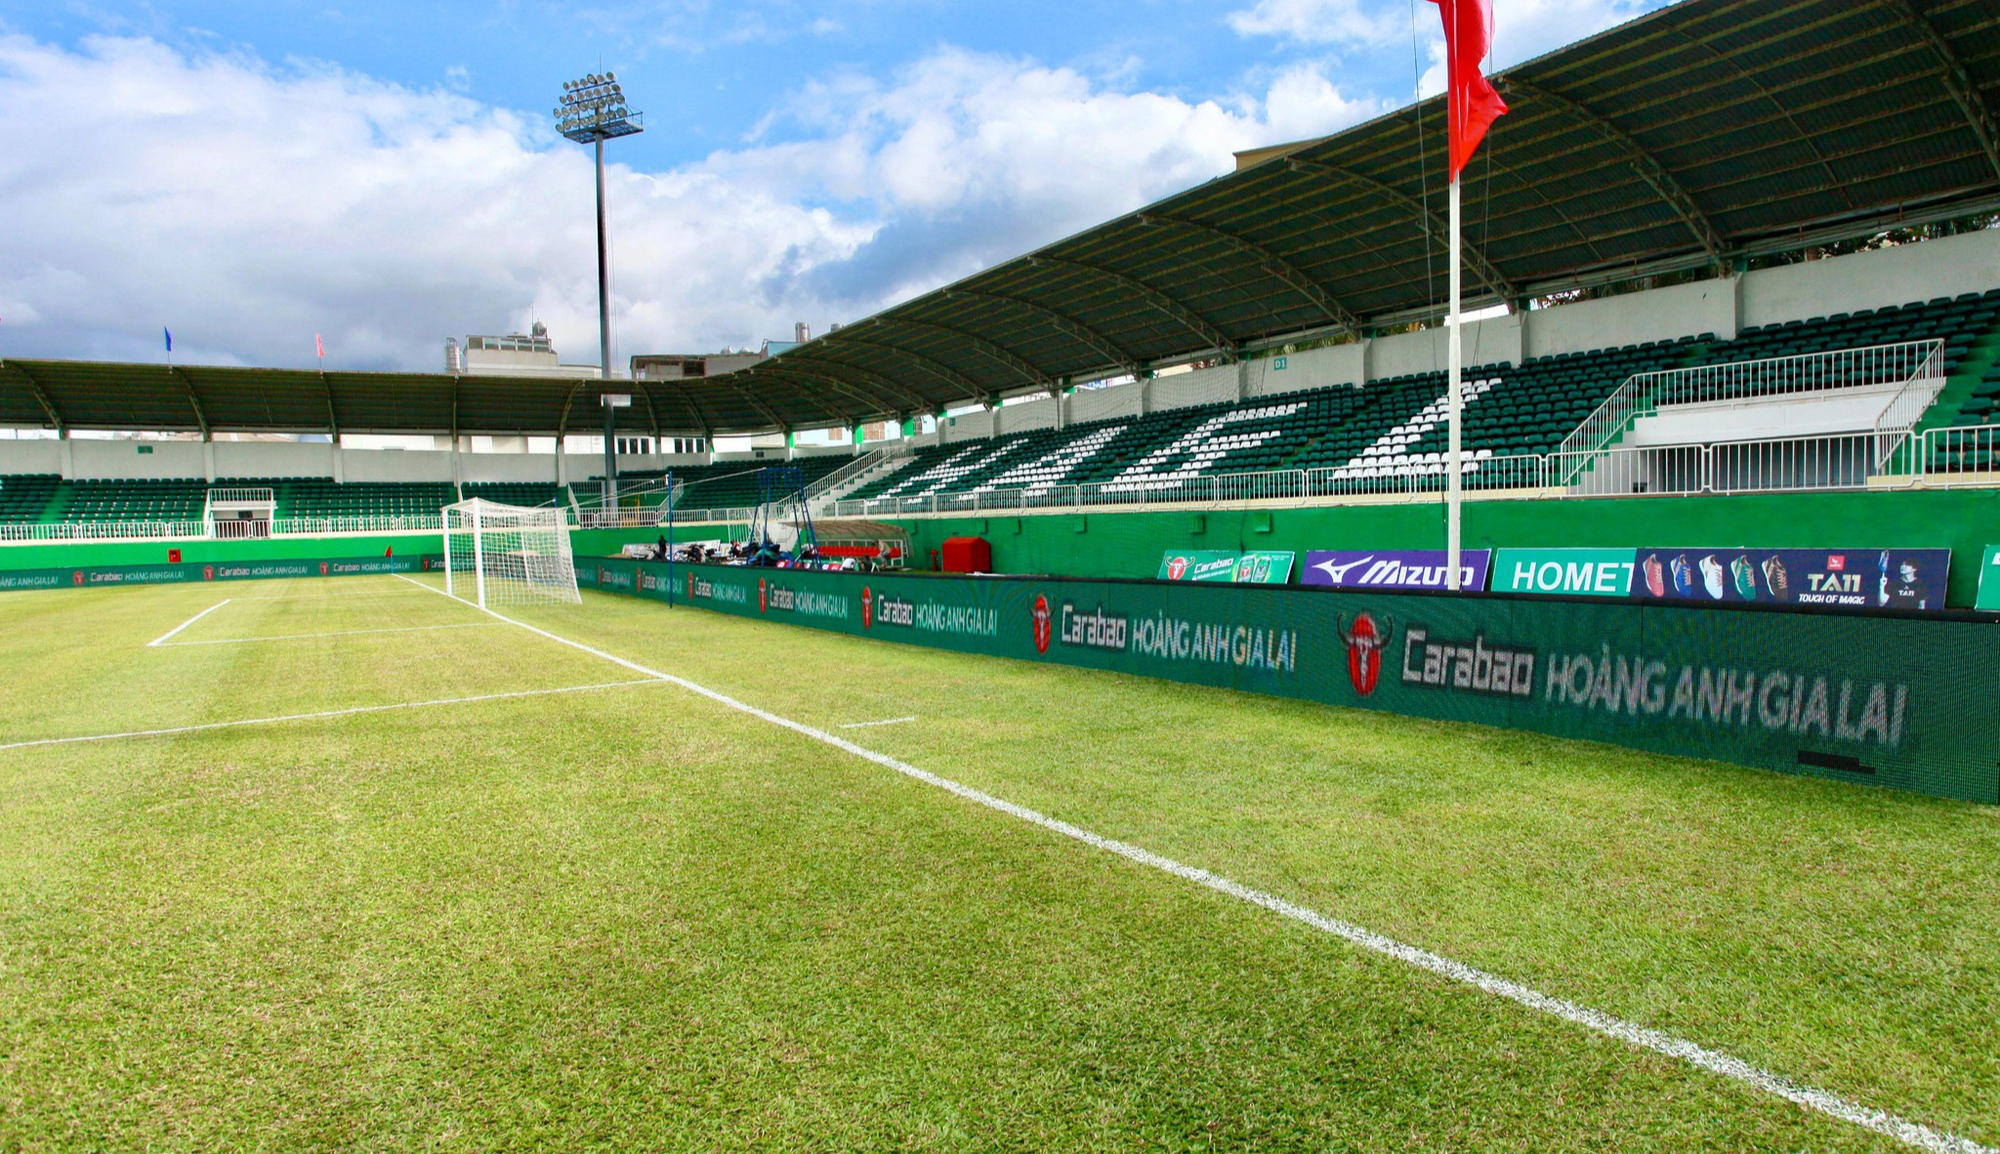 Đã mắt với mặt cỏ xanh mướt của sân nhà HAGL trước trận ra quân V-League - Ảnh 5.